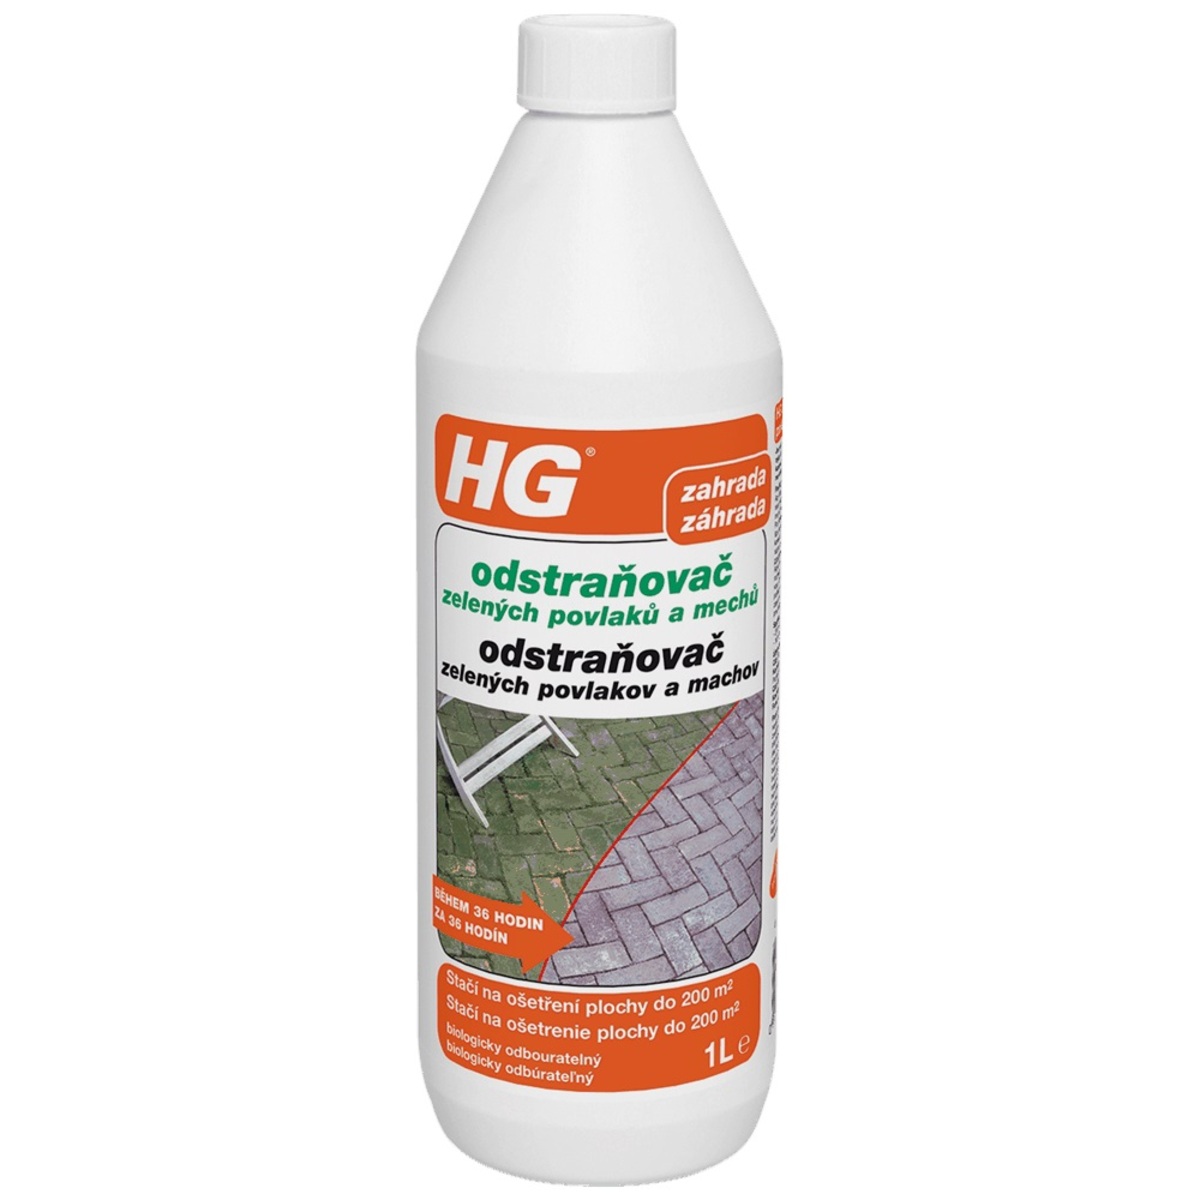 HG odstraňovač zelených povlaků a mechů – koncentrát HGOZPM HG